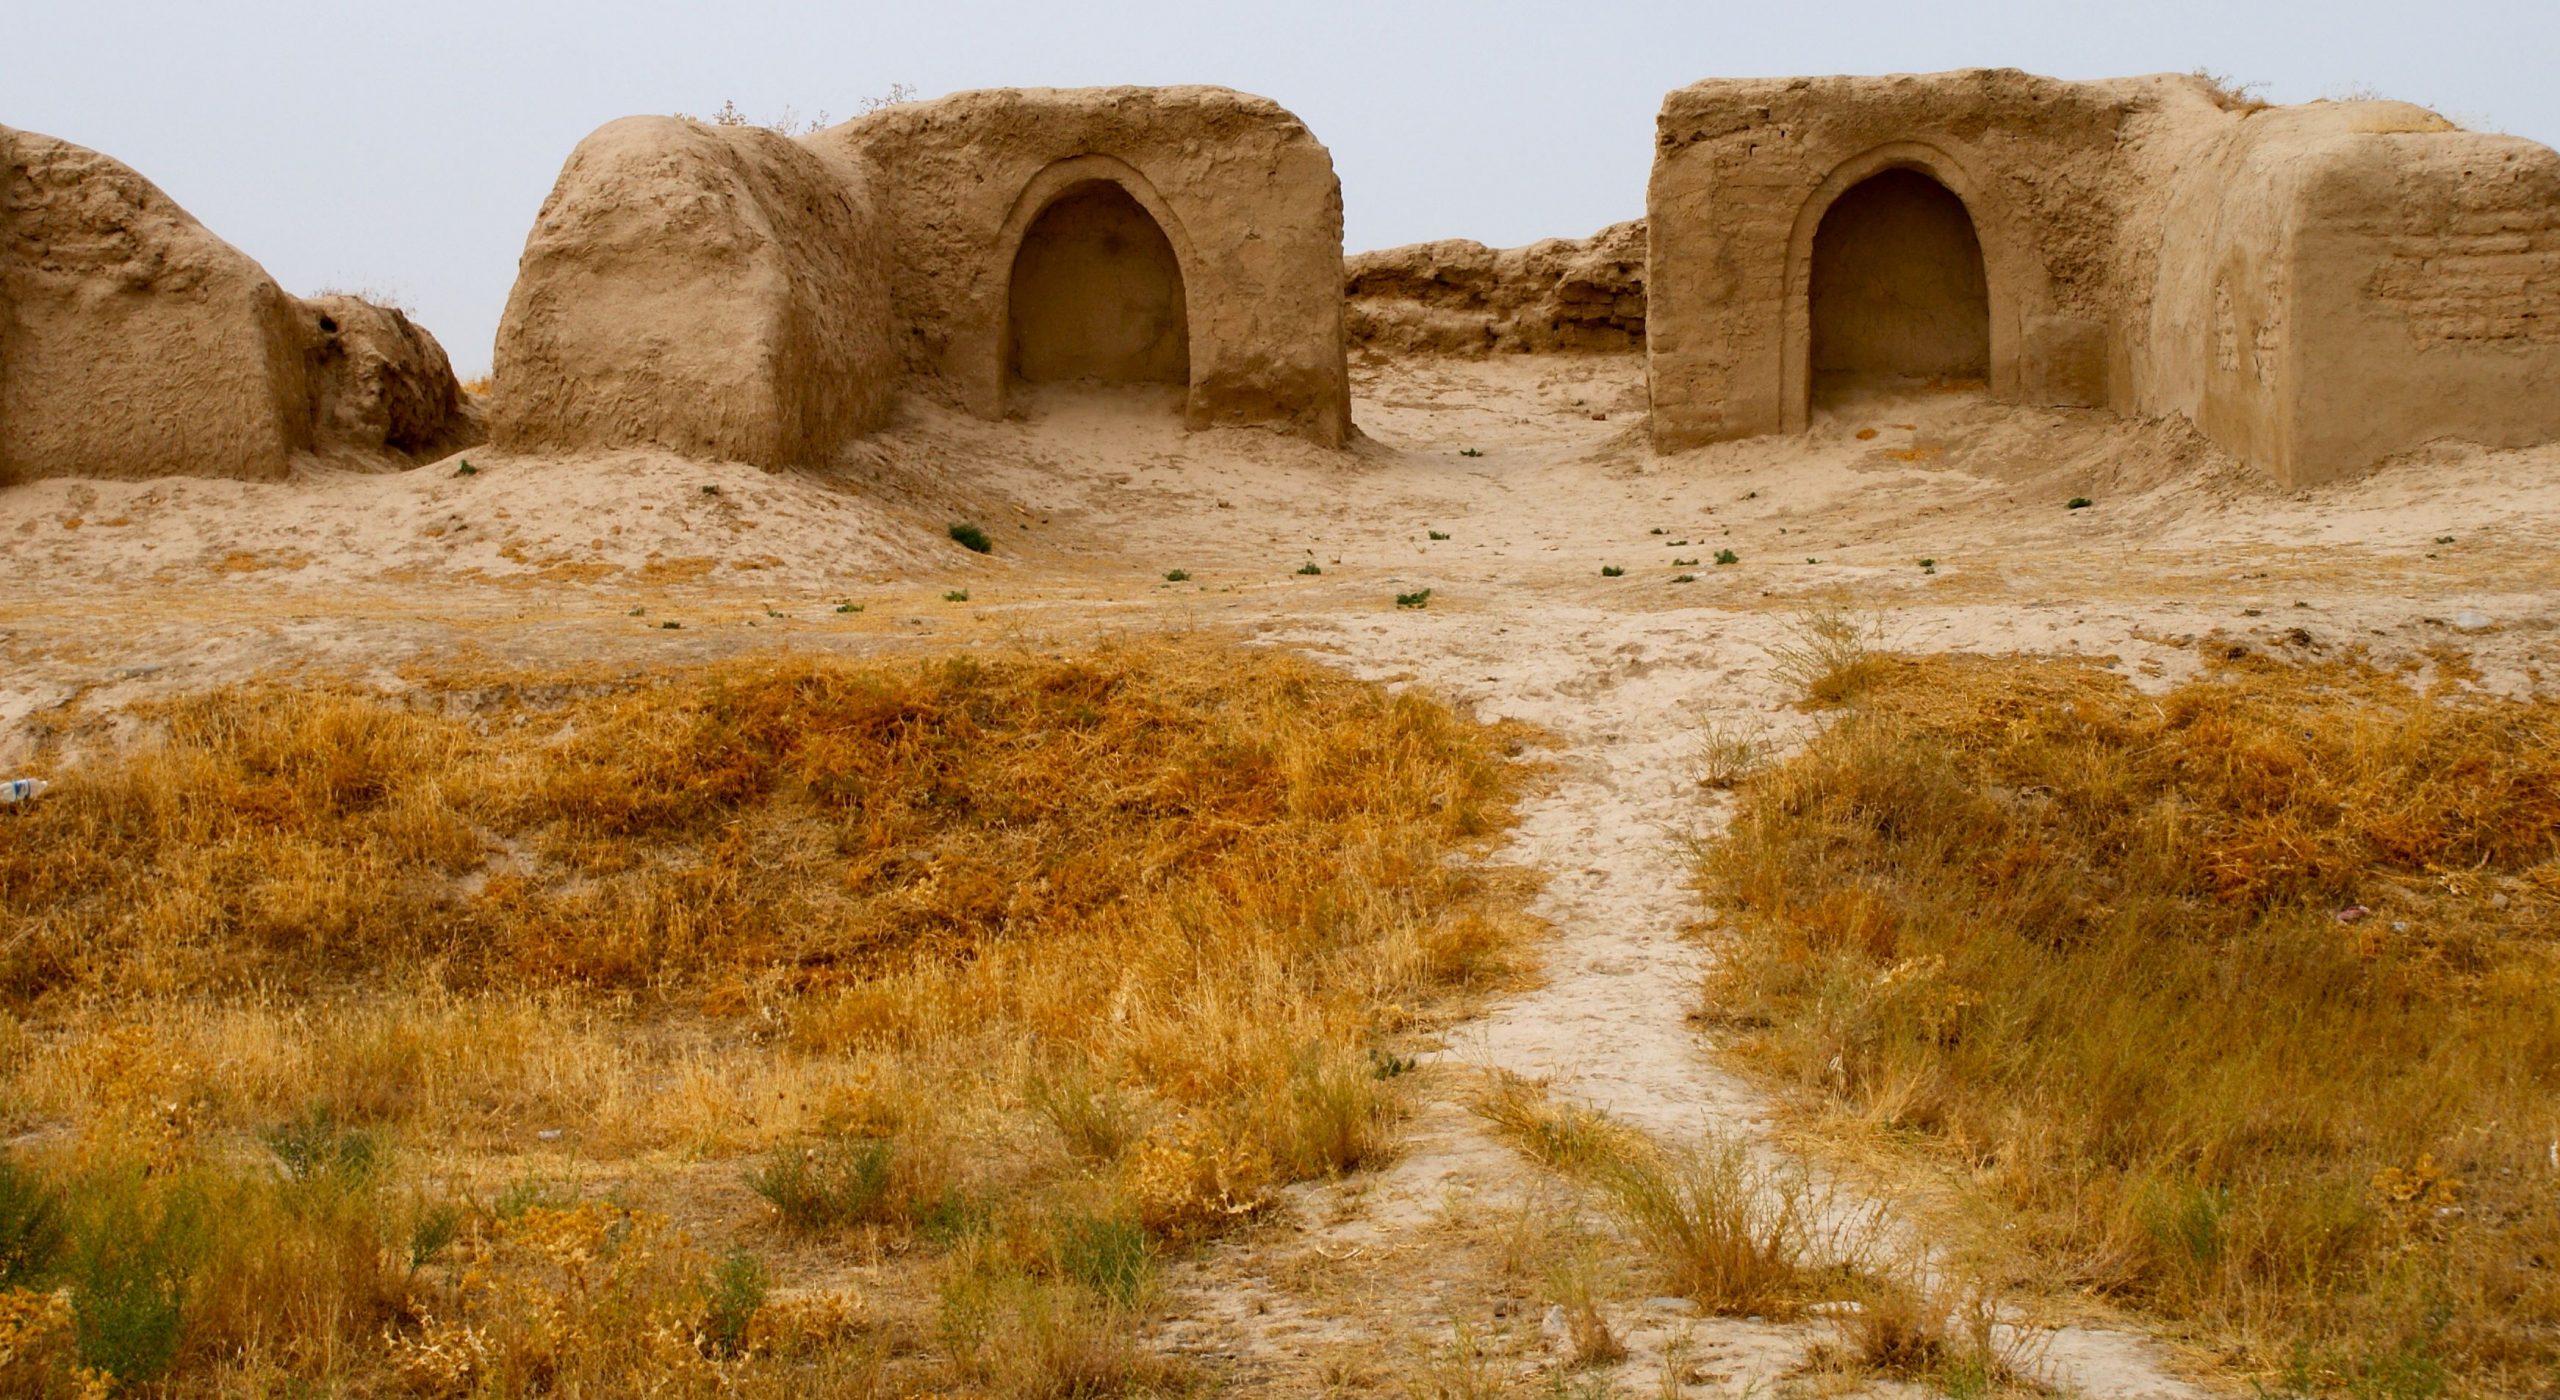 Zoroastrian ruins at Penjikent, Tajikistan. Photo credit: Caroline Eden